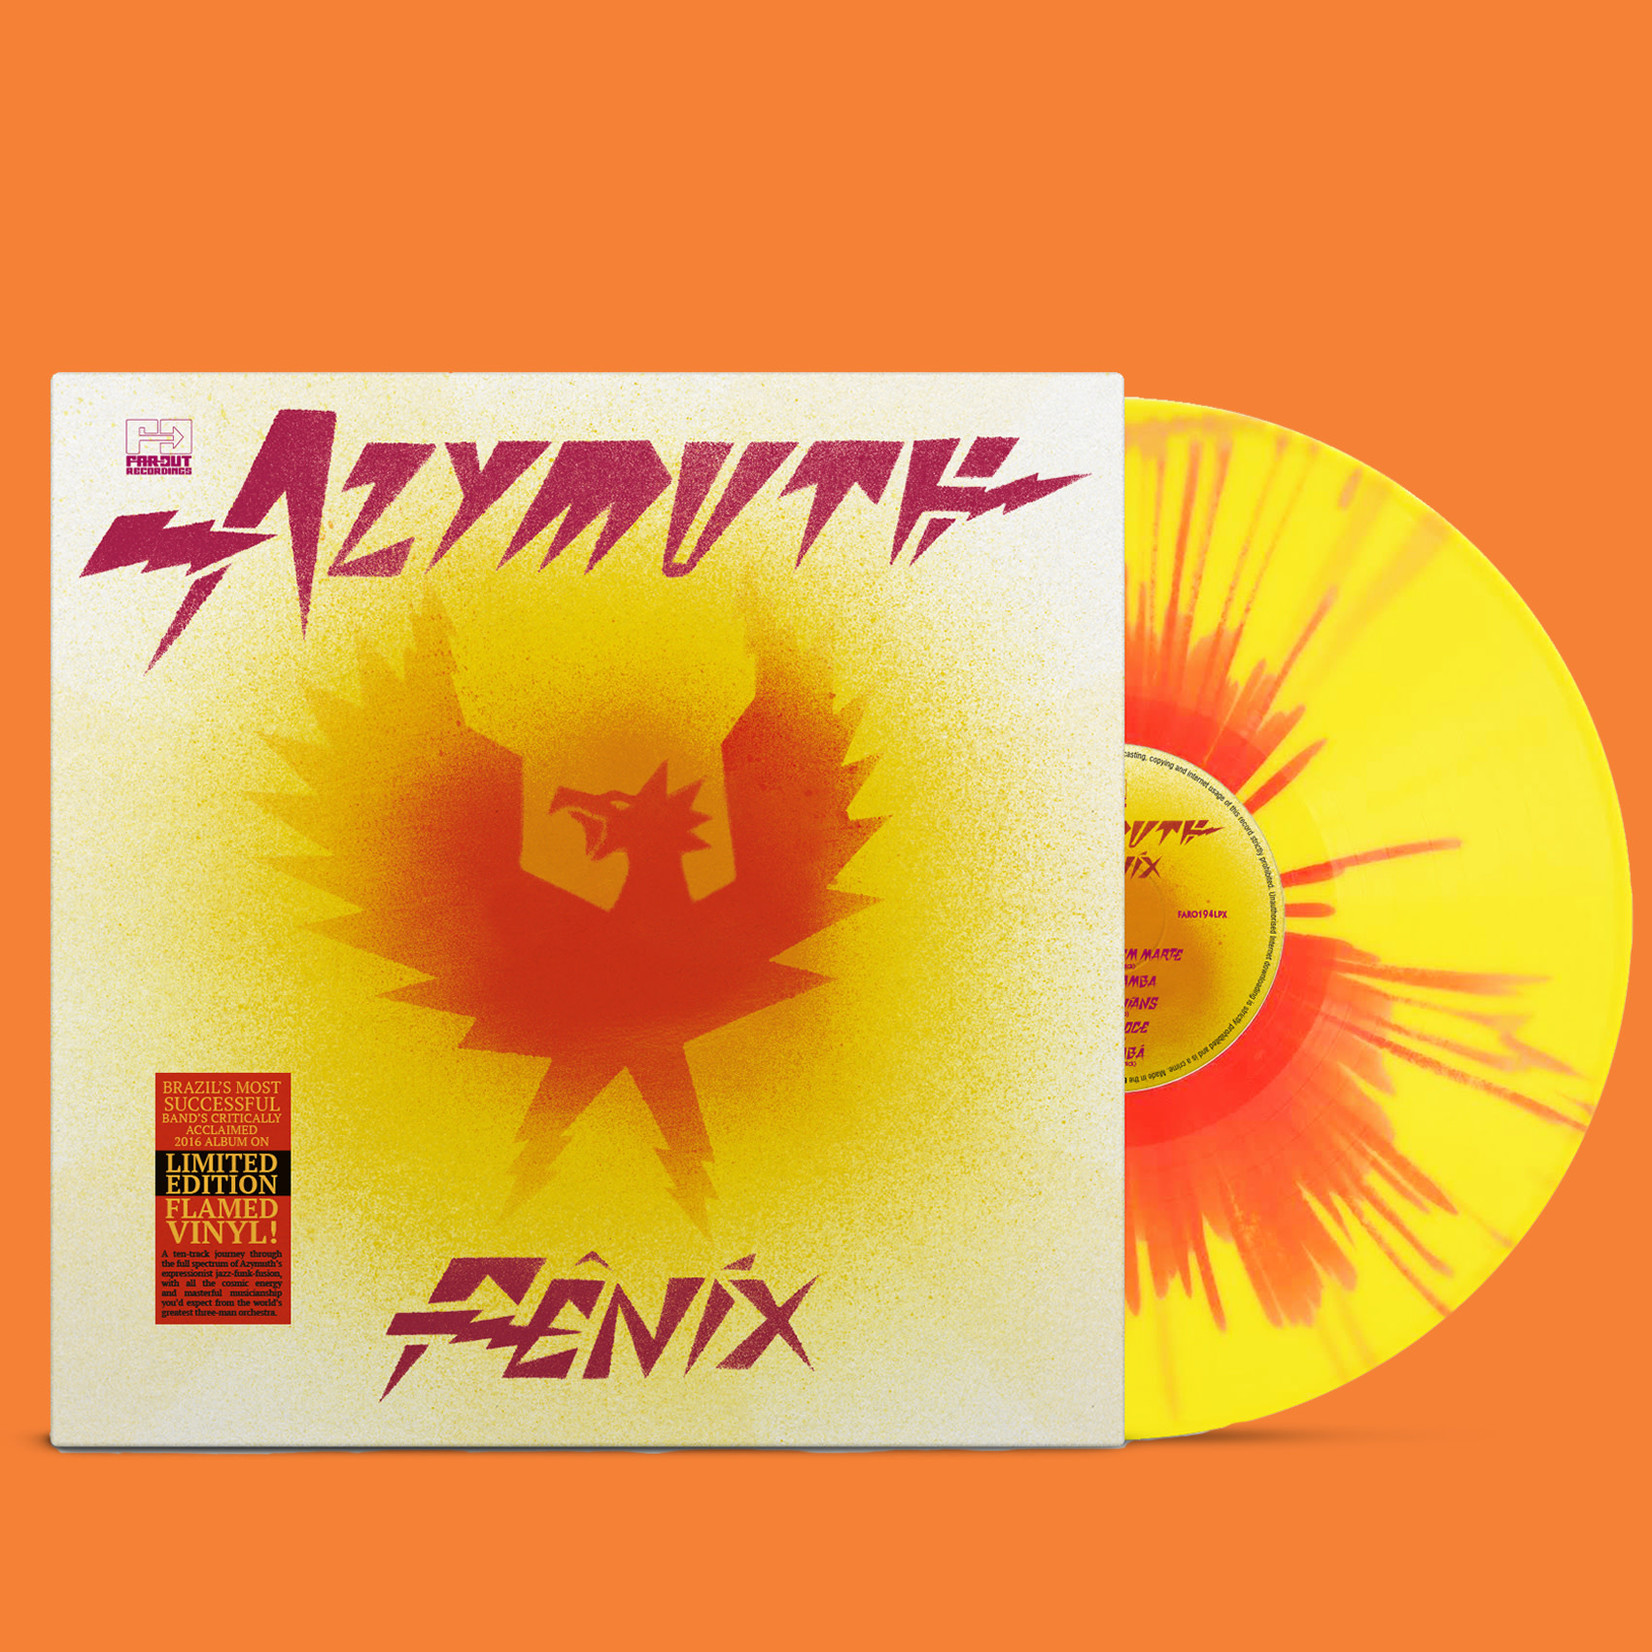 [New] Azymuth - Fenix (flame spalltered vinyl)